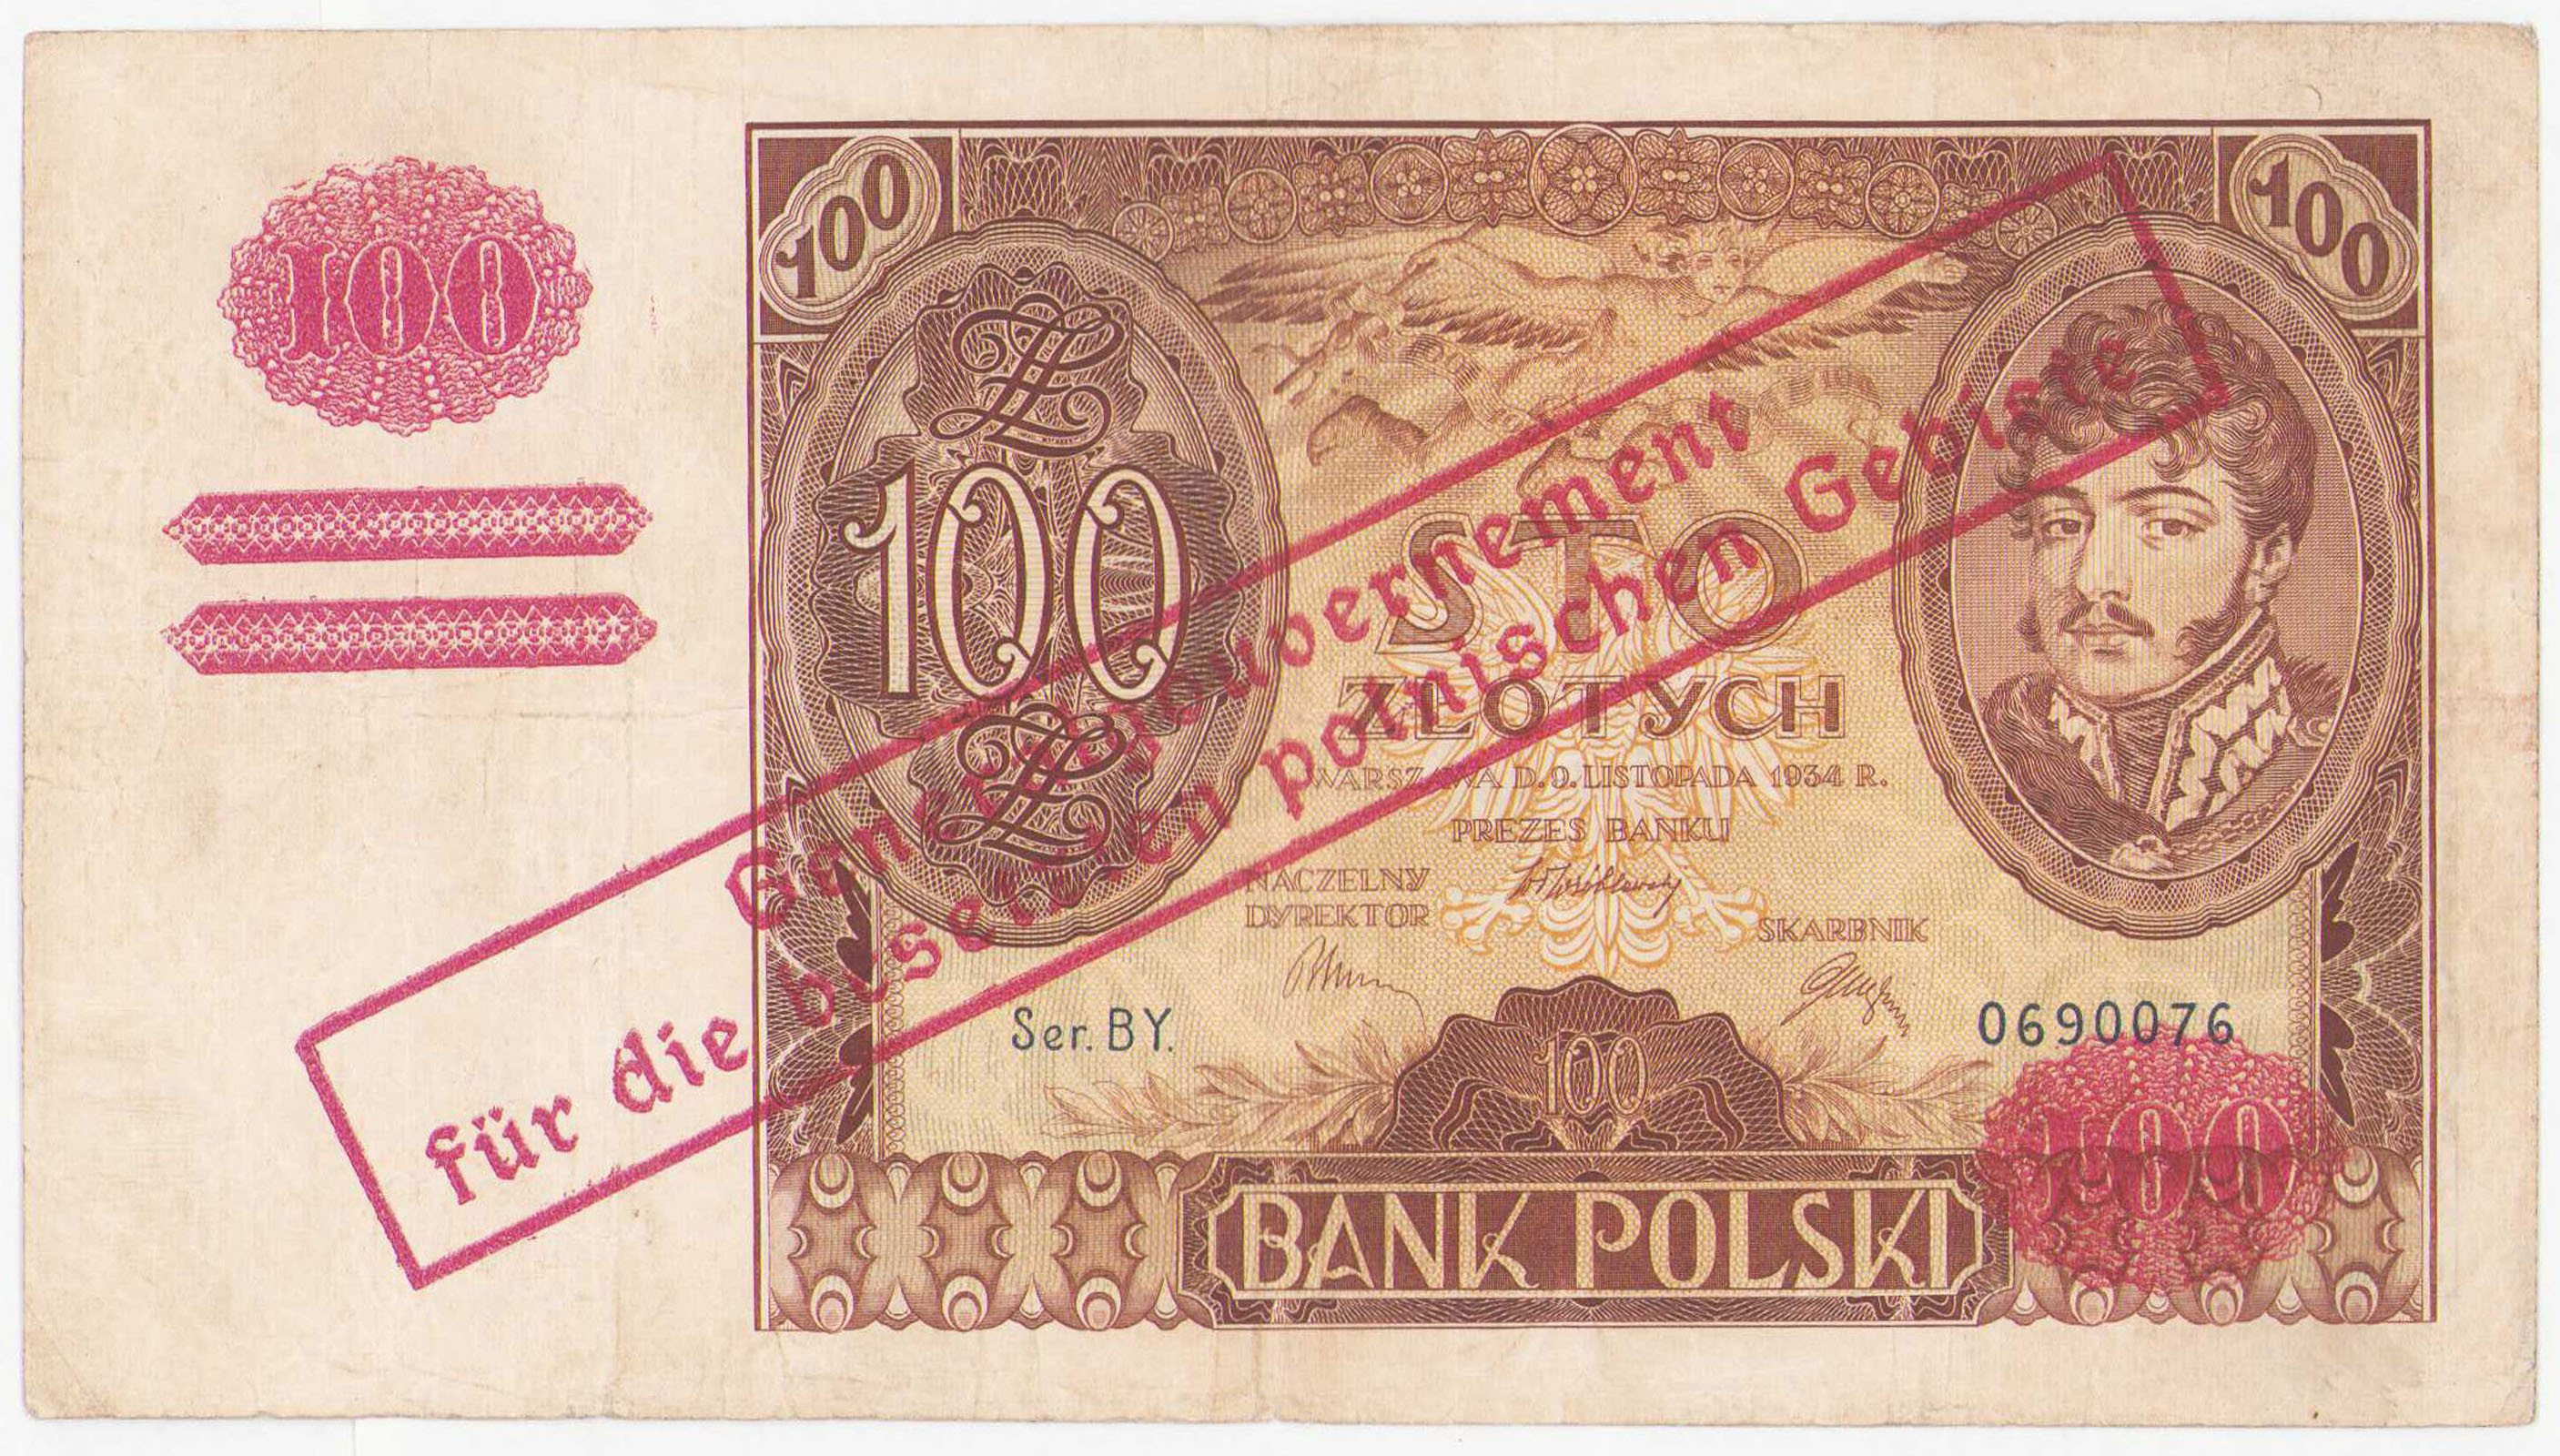 100 złotych 1934 seria BY - fałszywy nadruk